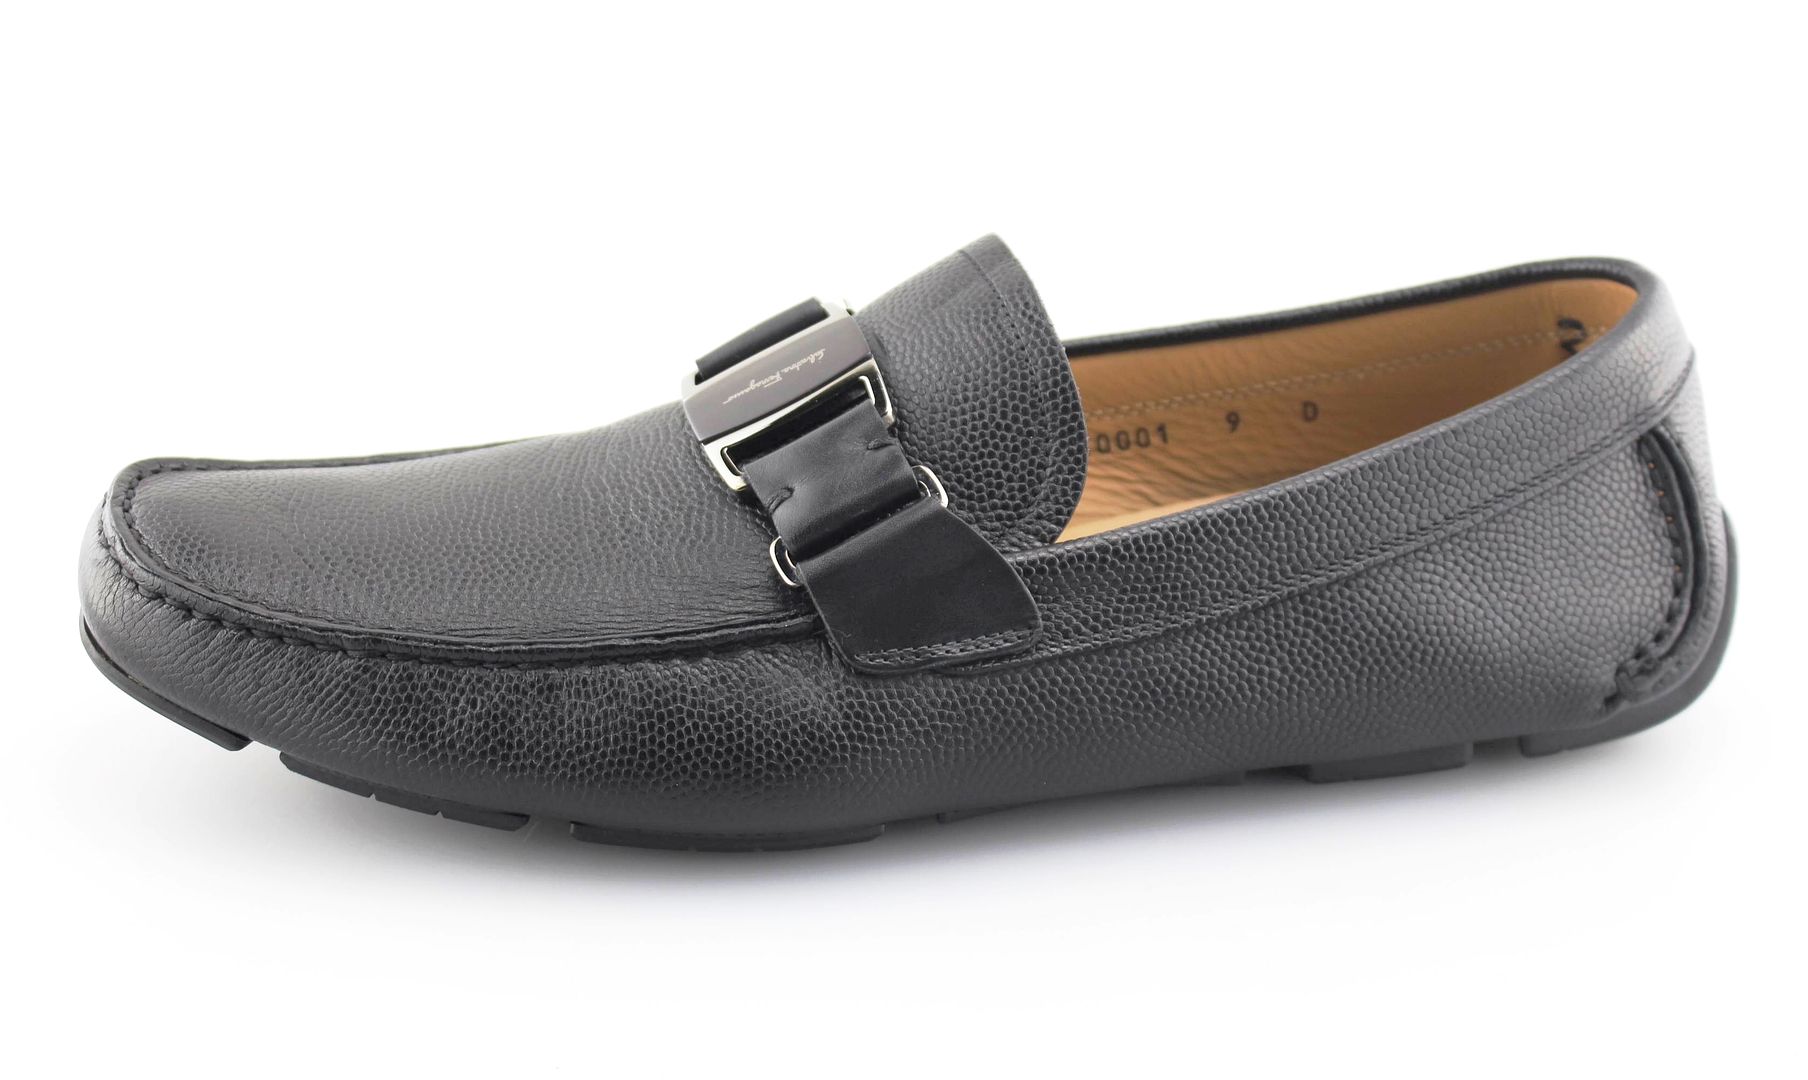 Men's SALVATORE FERRAGAMO 'Sardegna' Black Leather Loafers Size US 9 ...